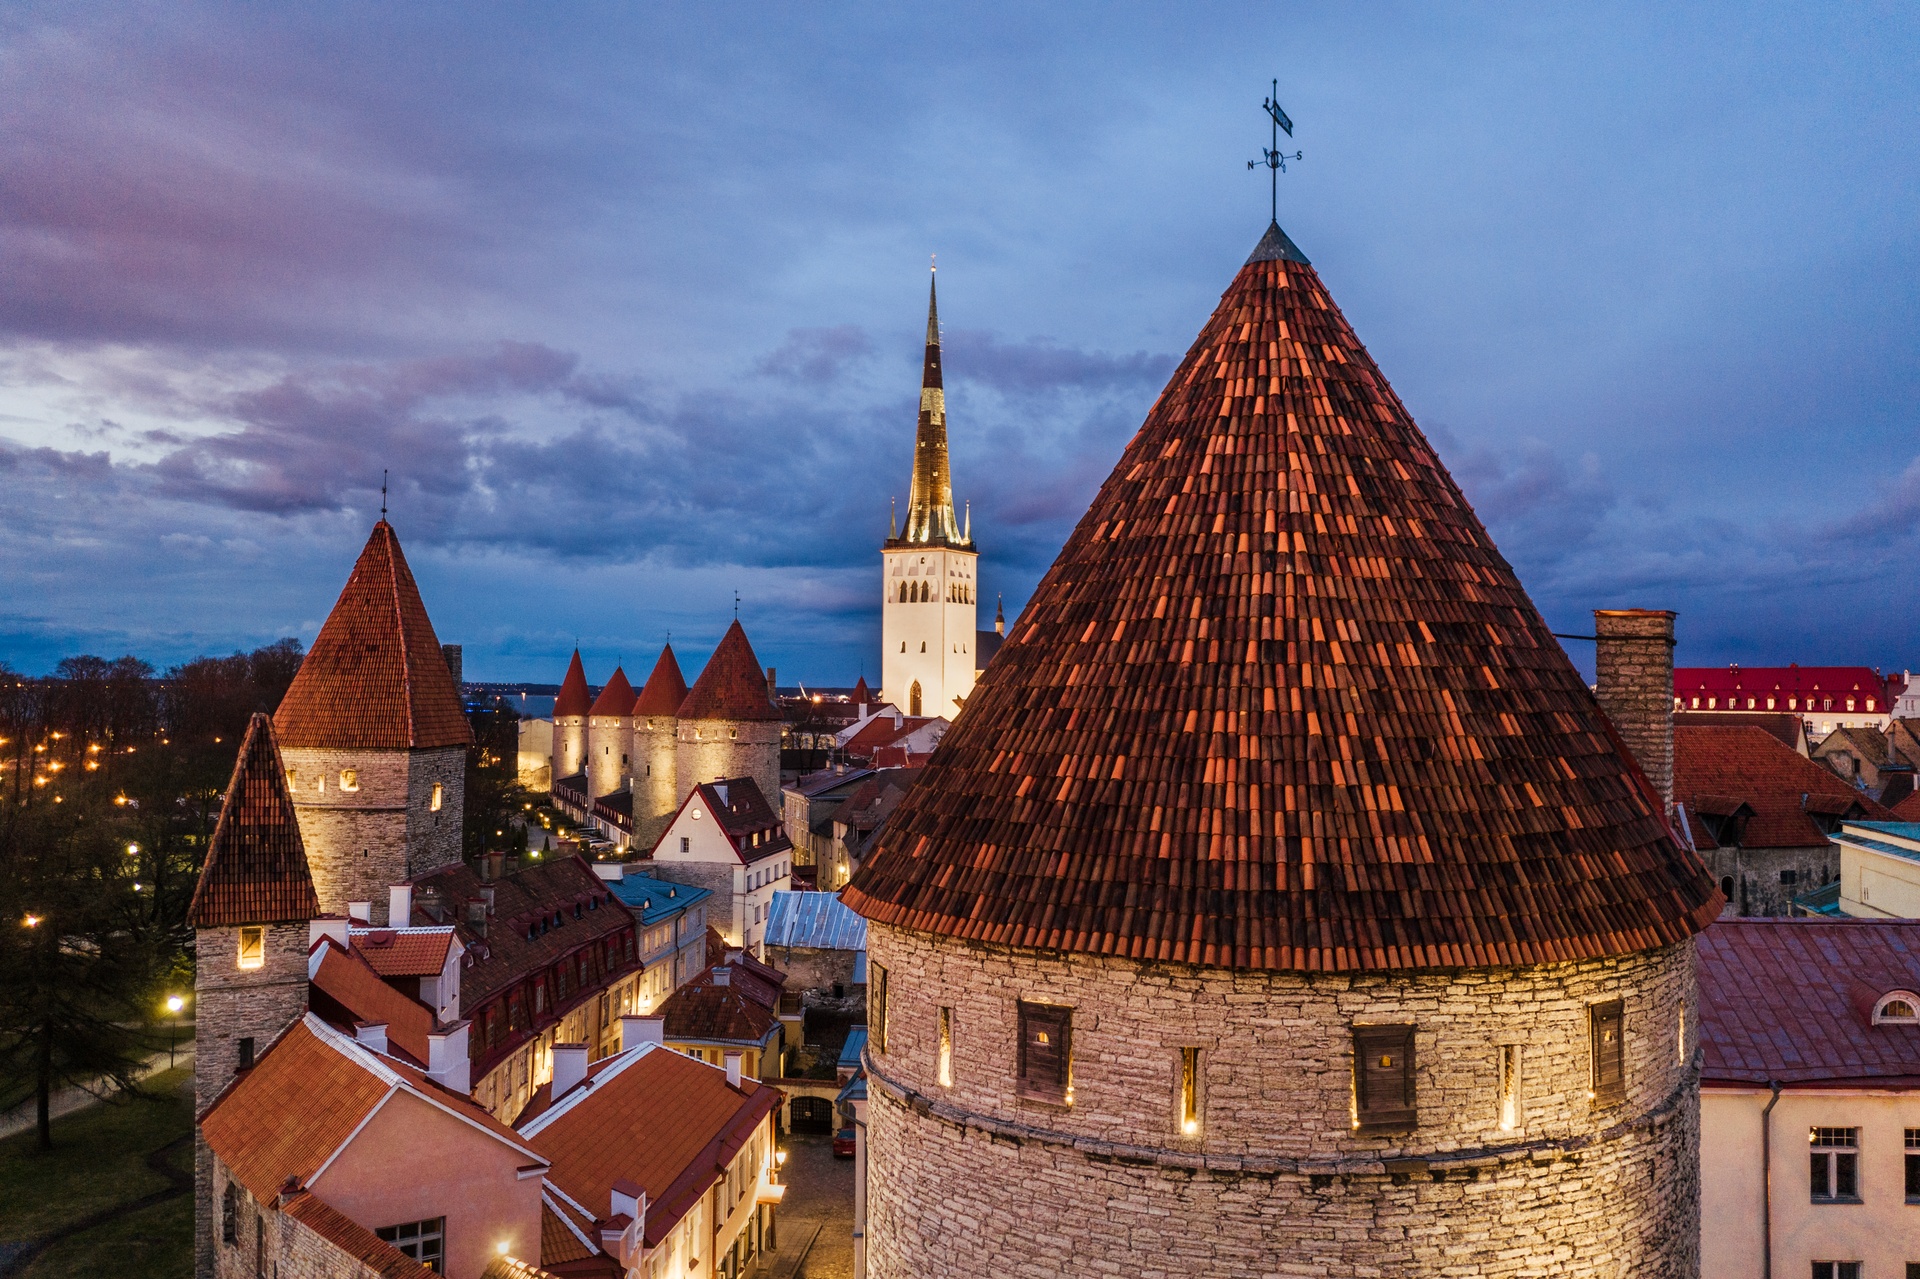  die Altstadt von Tallinn